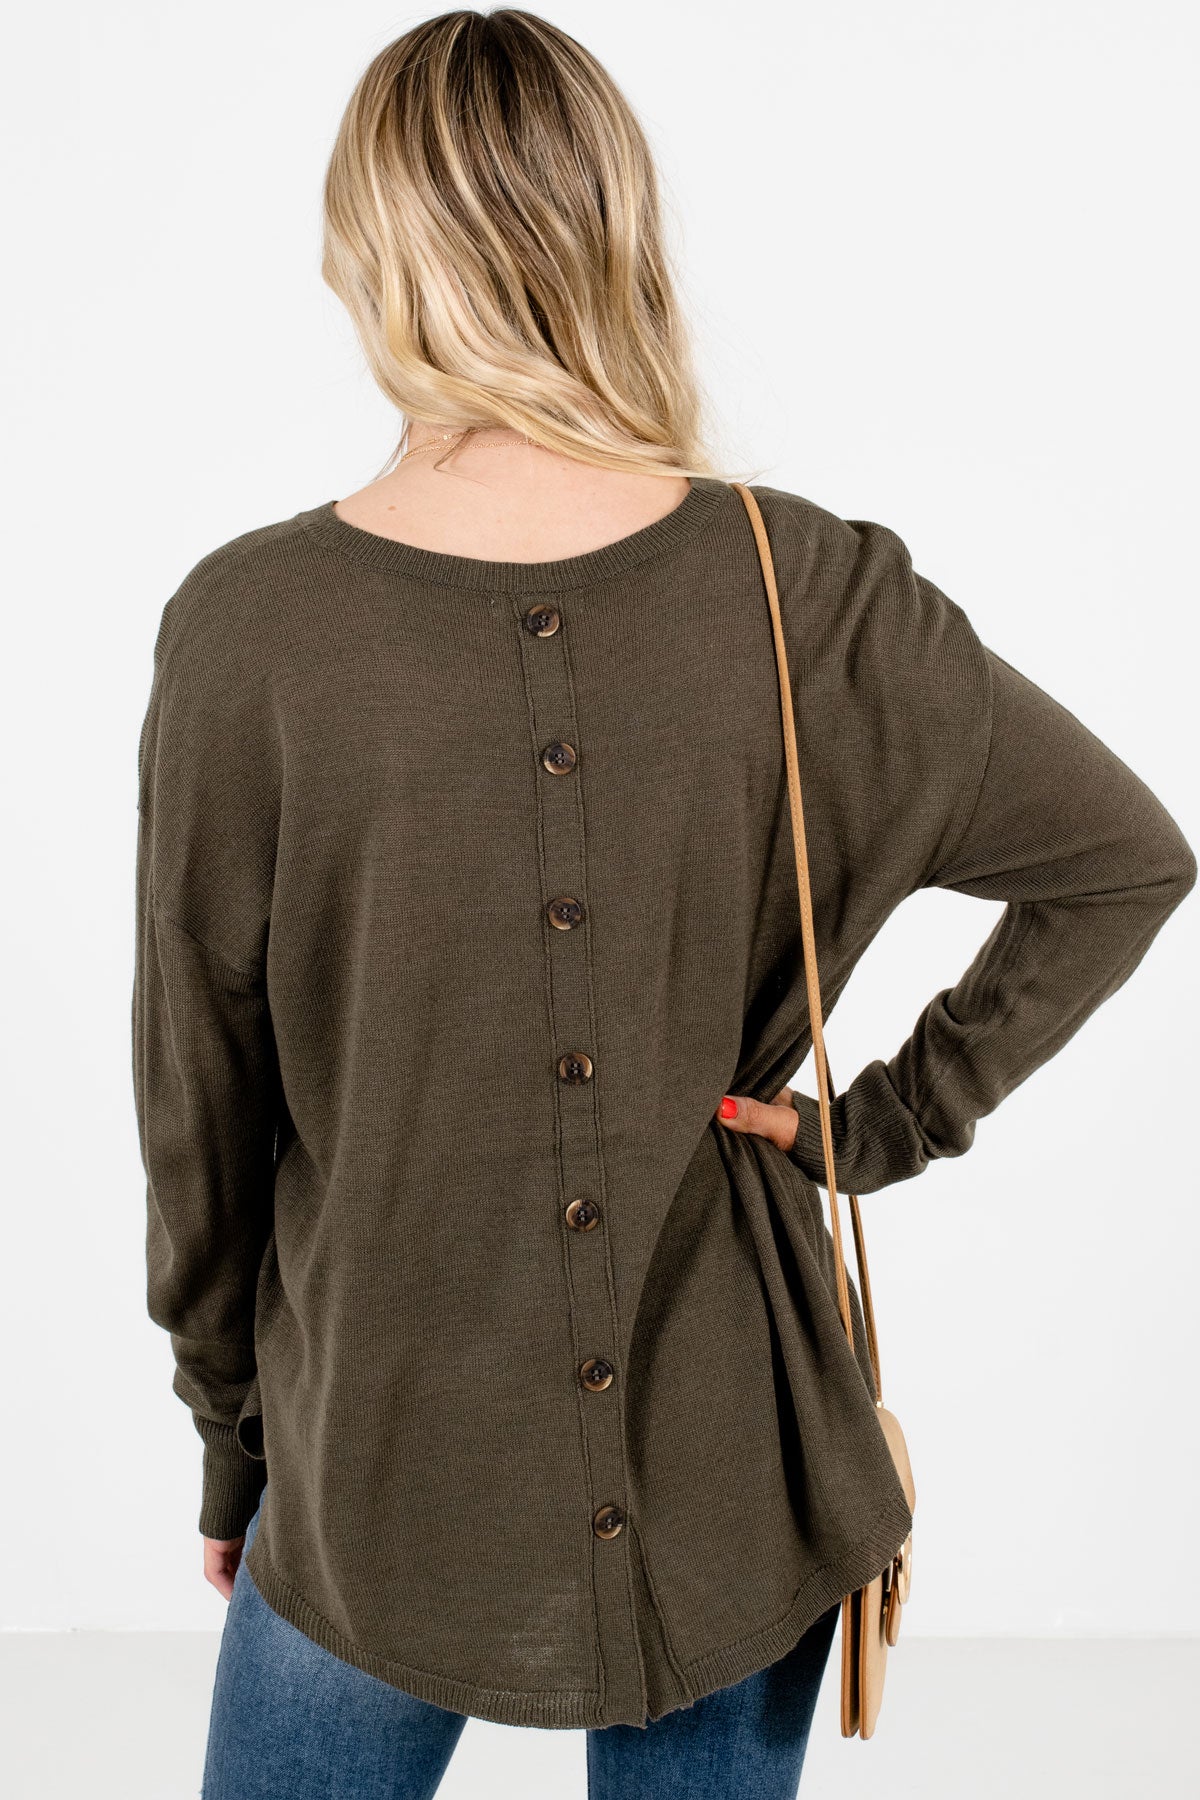 Women’s Olive Green Split High-Low Hem Boutique Sweater